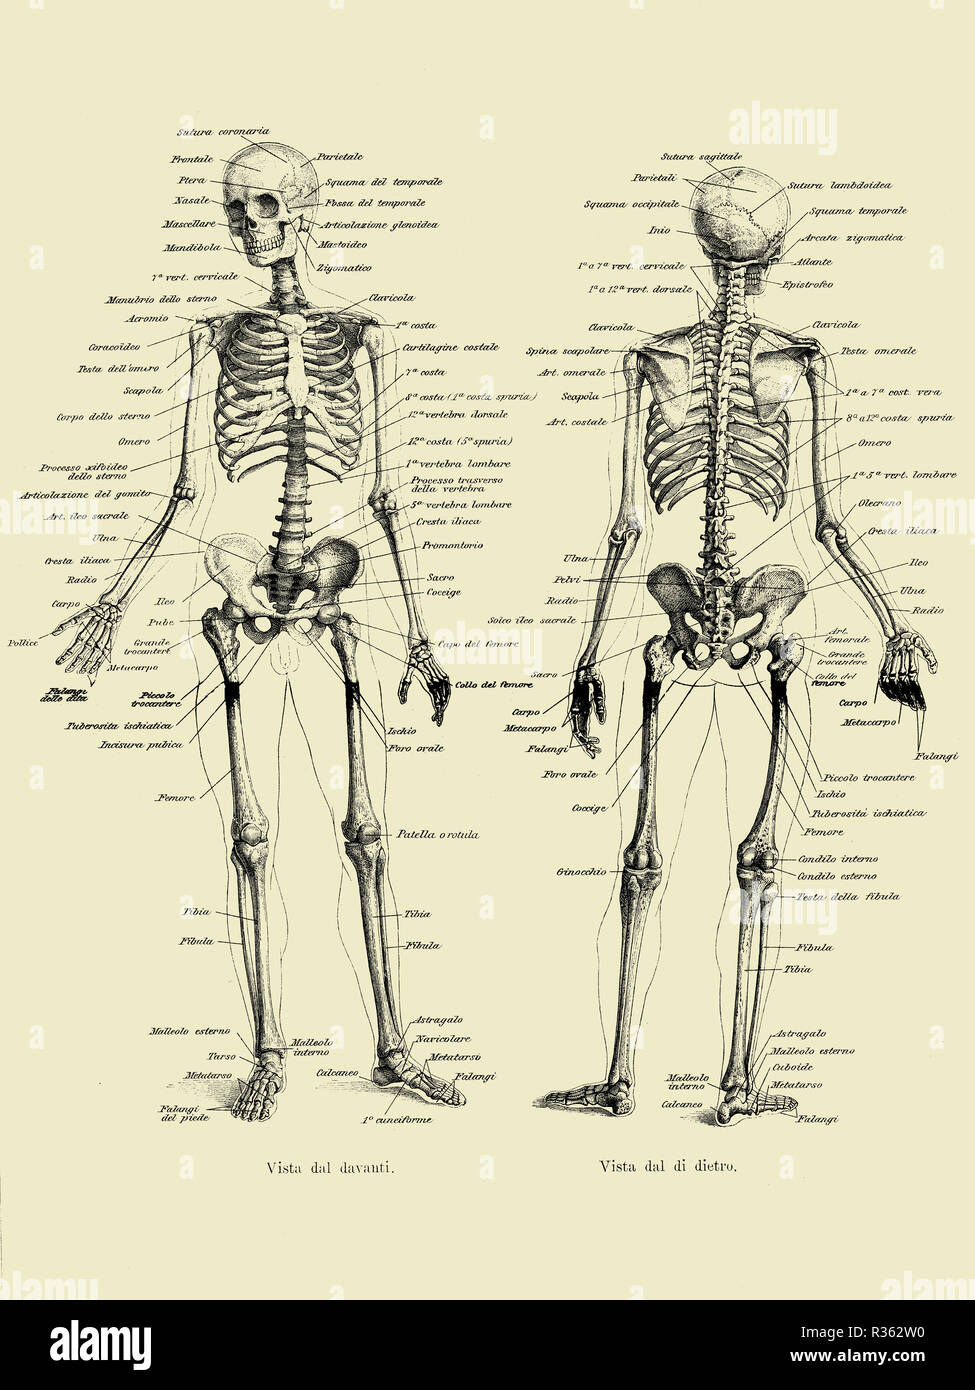 Illustrazione vintage di anatomia umana osso completa struttura scheletrica fronte e retro con italiano descrizioni anatomiche Foto Stock